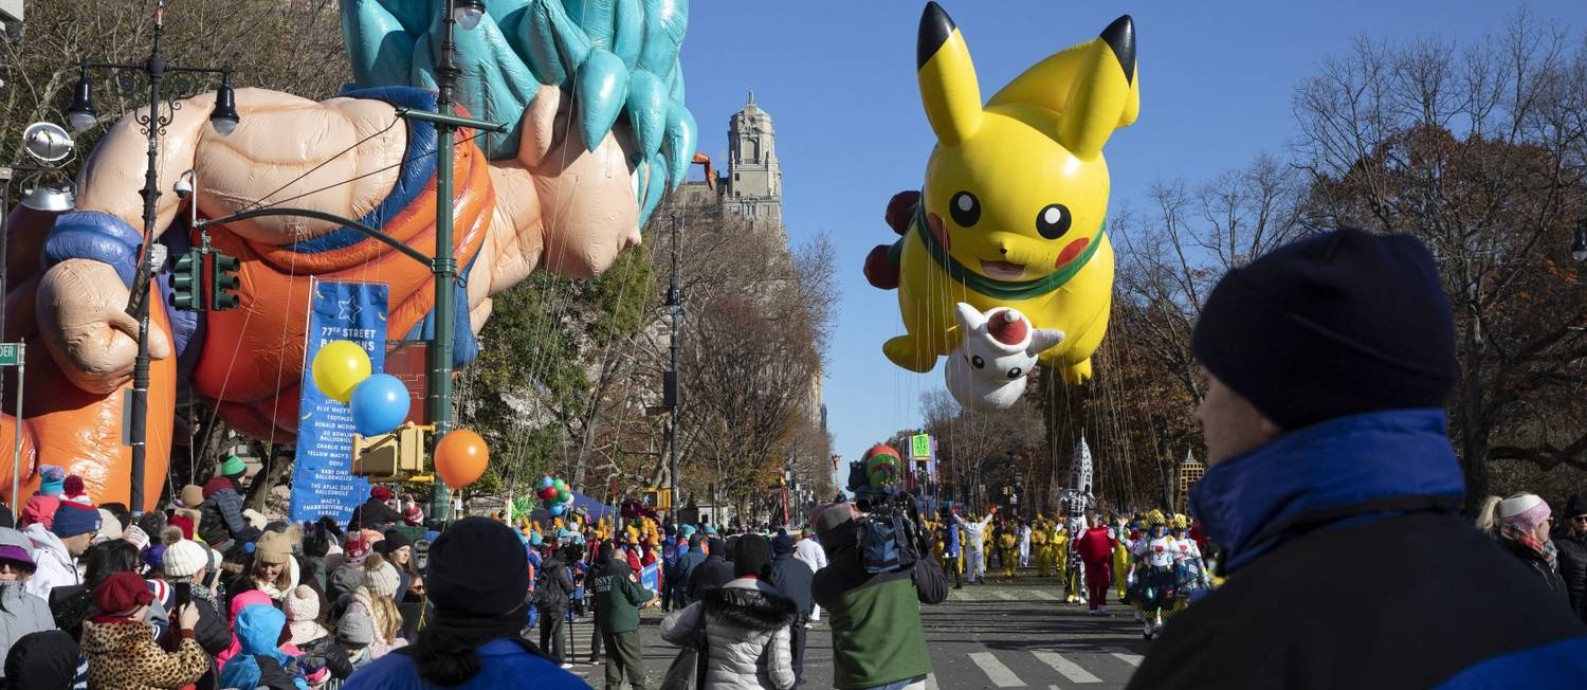 Balões do Goku, personagem do desenho Dragon Ball, e o icônico Pokémon Pikachu, na parada do Dia de Ação de Graças de 2018 em Nova York Foto: GABRIELLA ANGOTTI-JONES / NYT/22-11-18